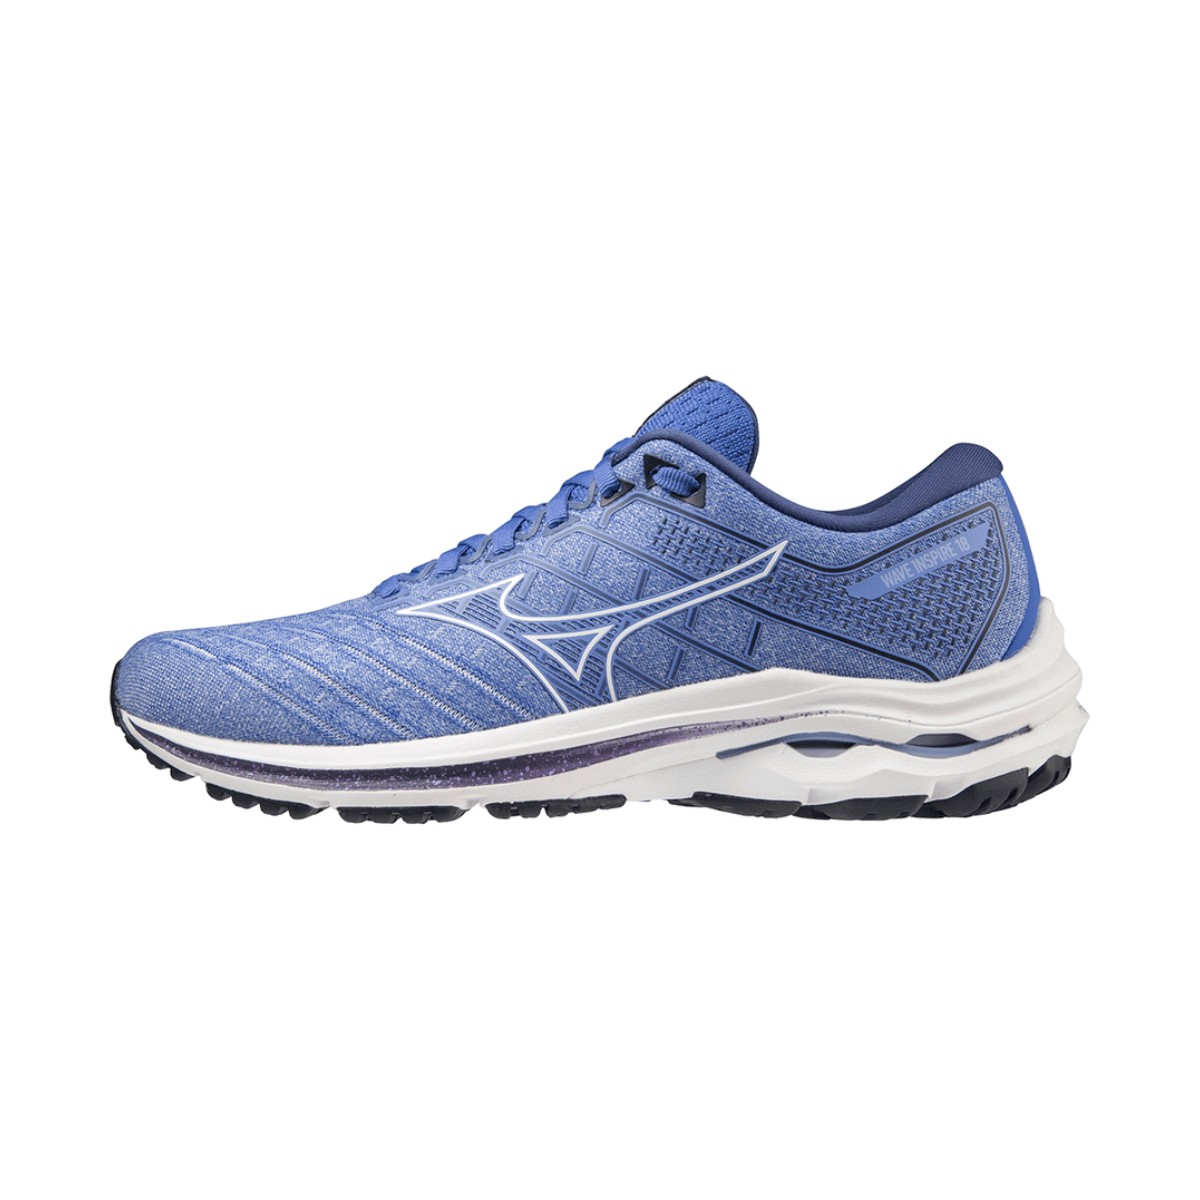 Schuhe Mizuno Wave Inspire 18 Blau AW22 Damen, Größe 37 - EUR